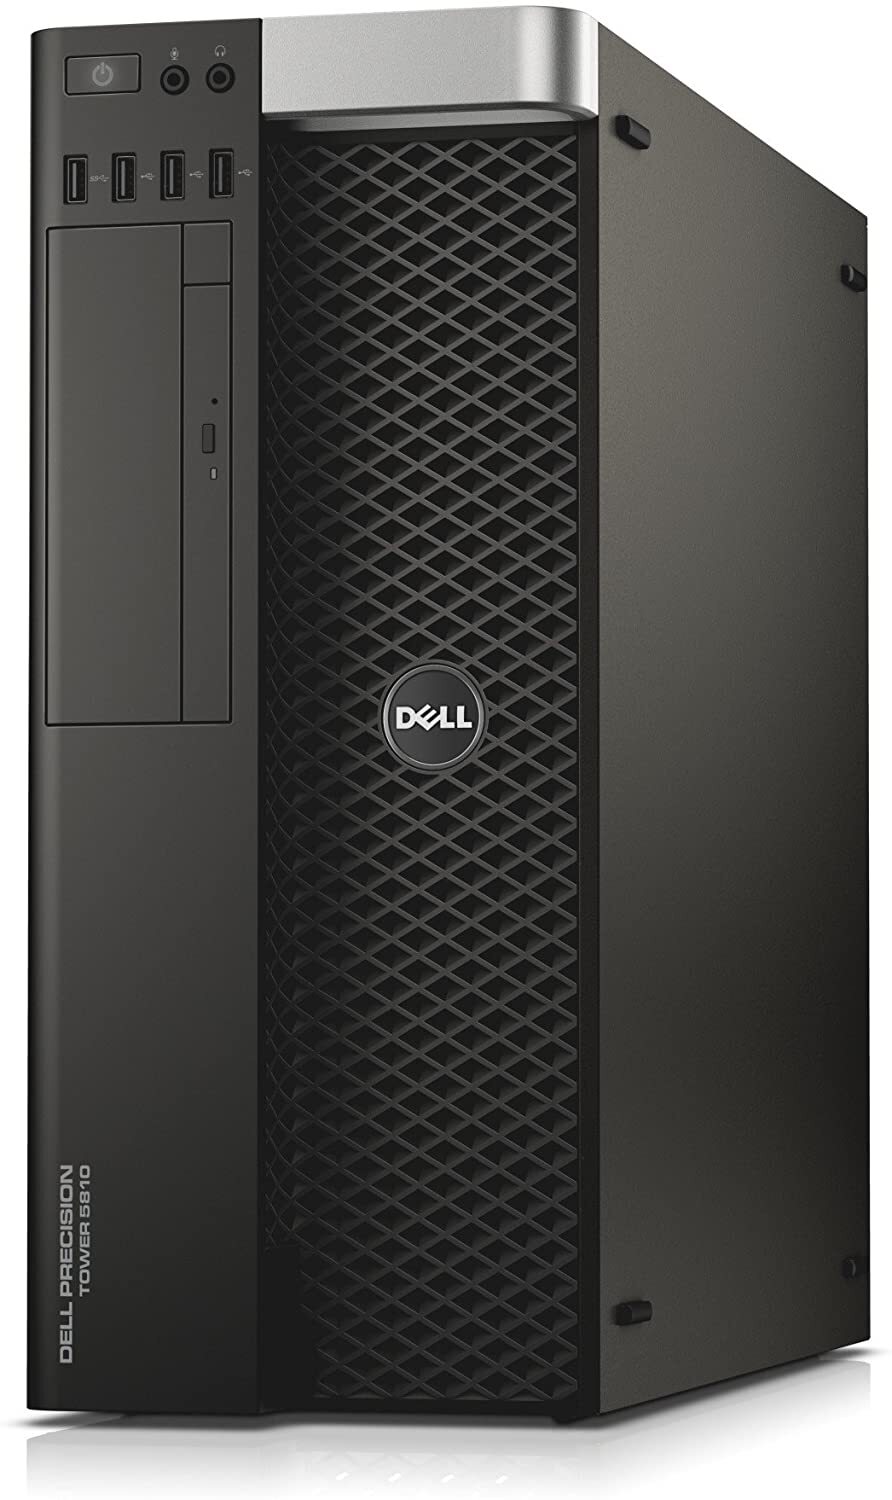 Dell Precision Tower 5810 Intel Xeon E5-1650 V3 3.50GHz 128GB RAM 500GB SSD Win 10 Full Size Image